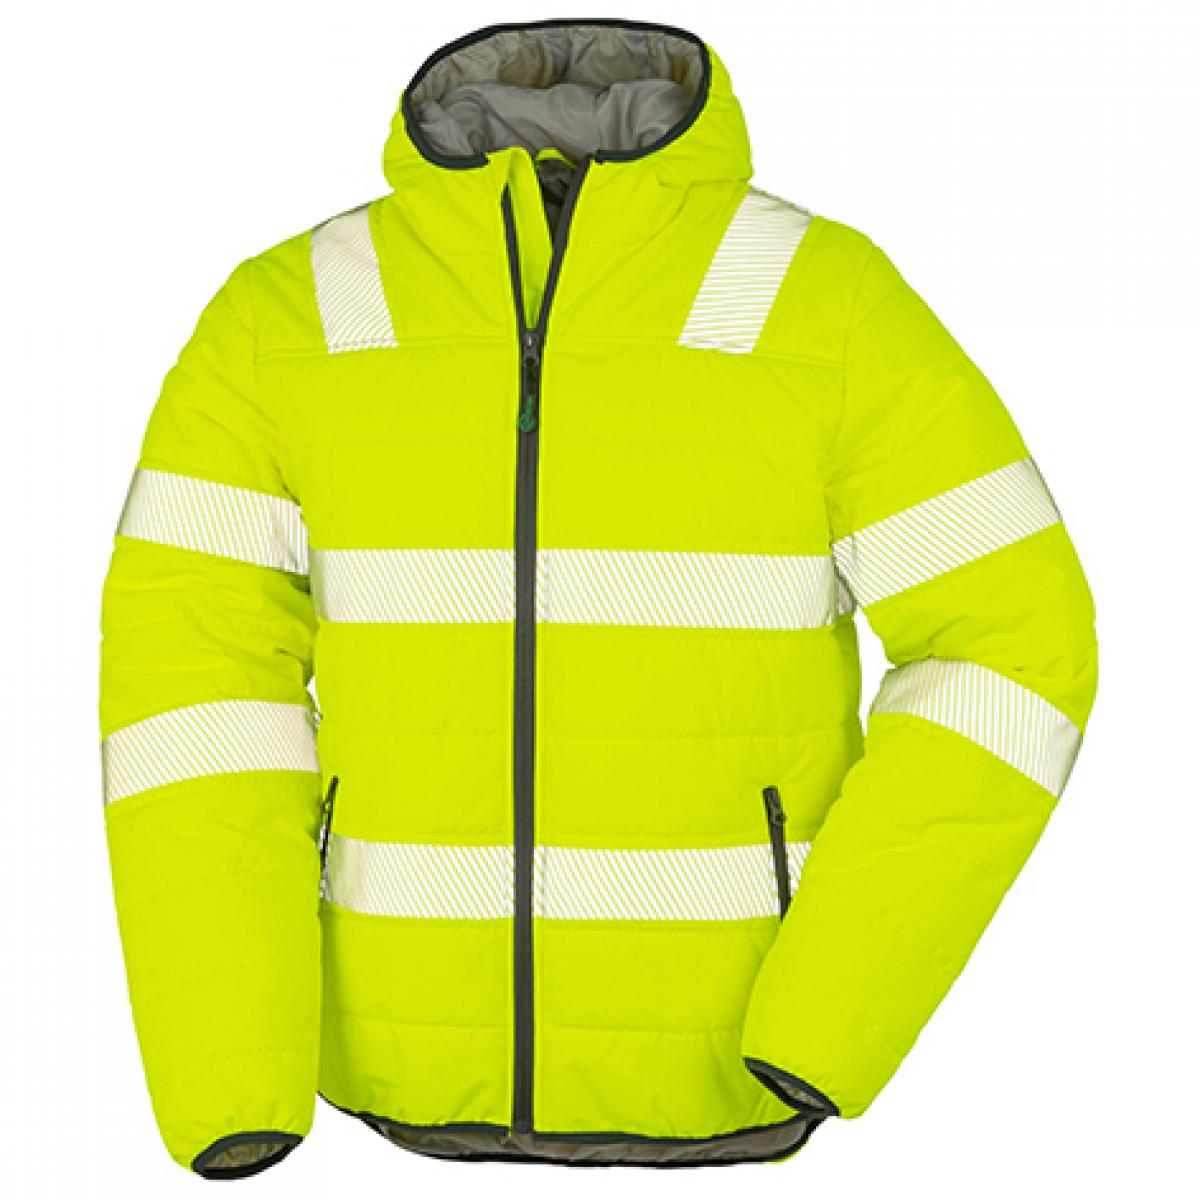 Hersteller: Result Genuine Recycled Herstellernummer: R500X Artikelbezeichnung: Recycled Ripstop Padded Safety Jacket - Arbeitsjacke Farbe: Fluorescent Yellow